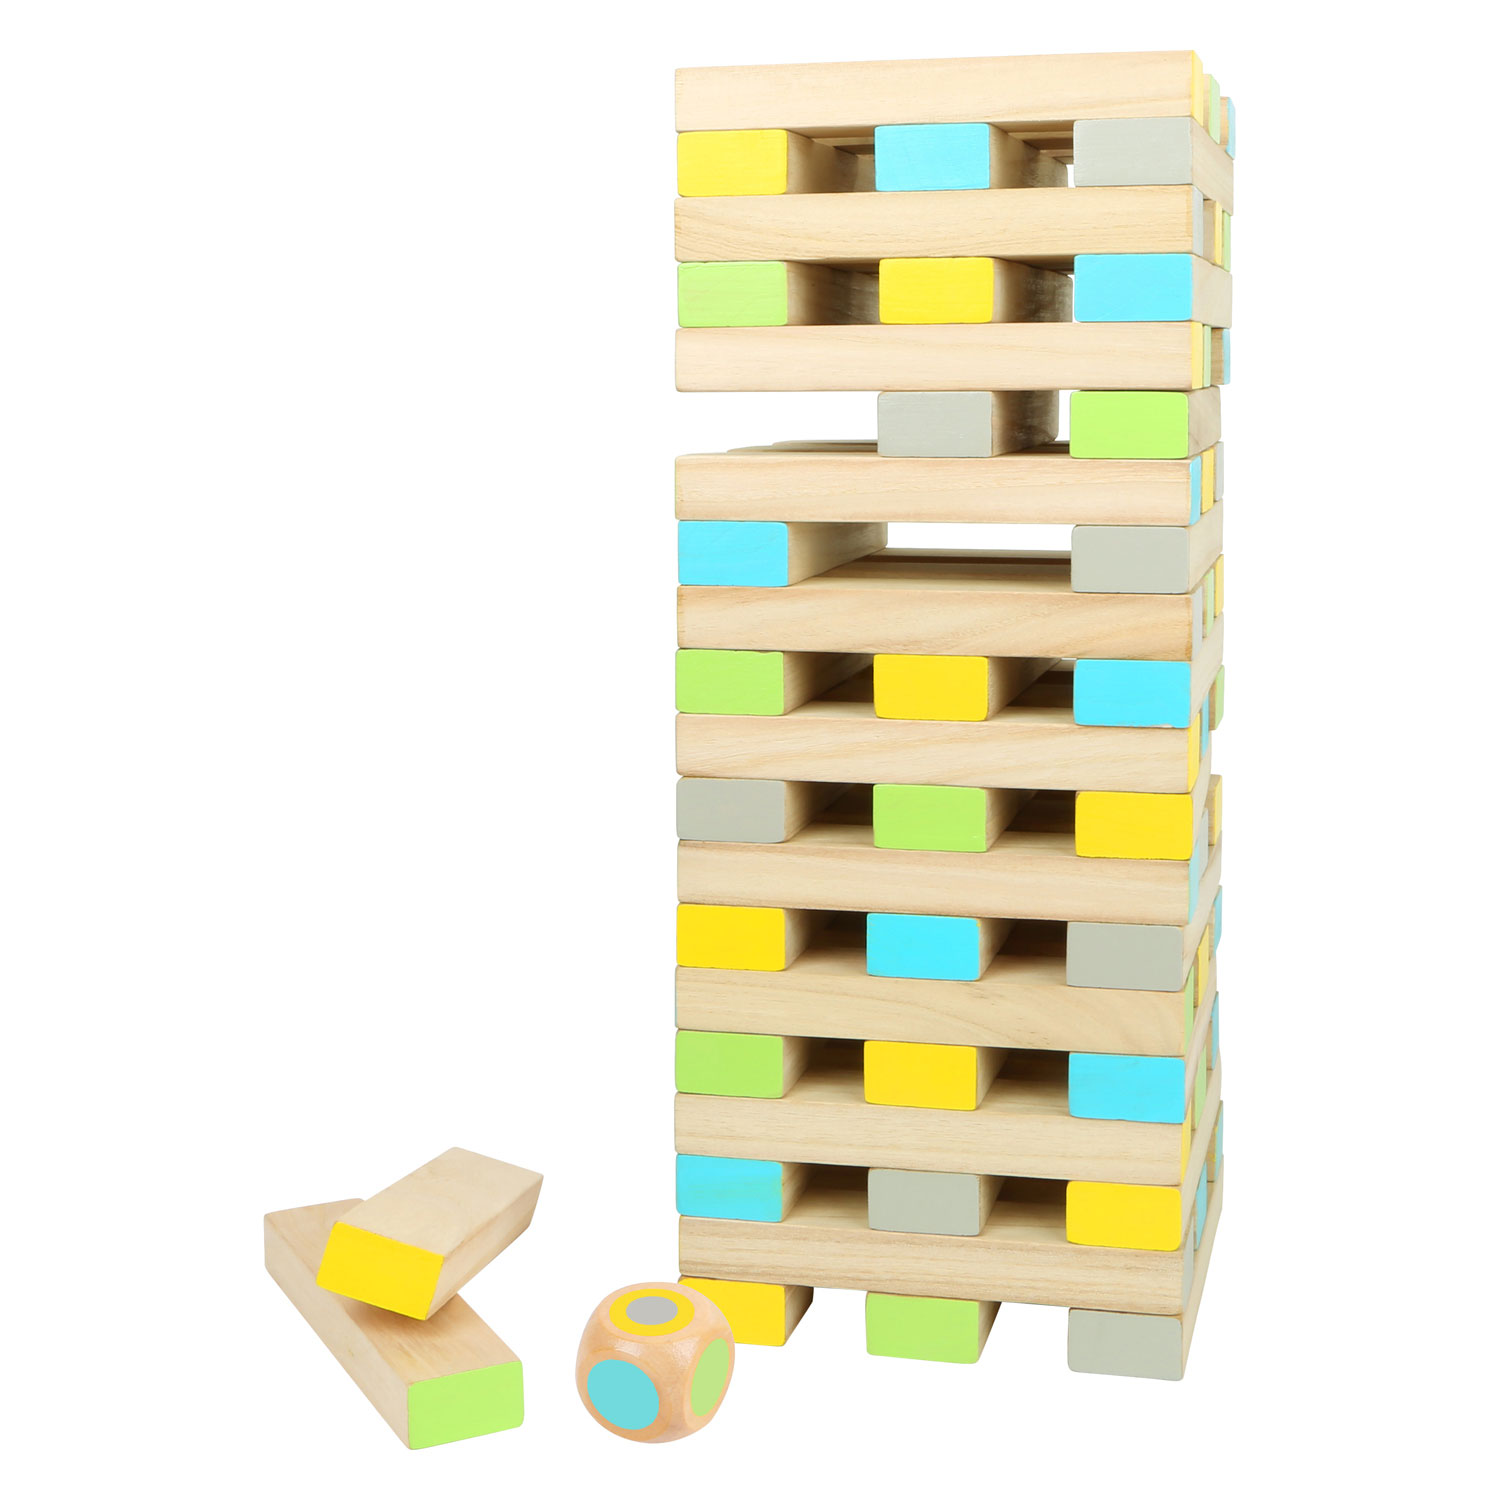 Jouets empilables en bois Jeux d'équilibrage Jeux de puzzle Jouets pour